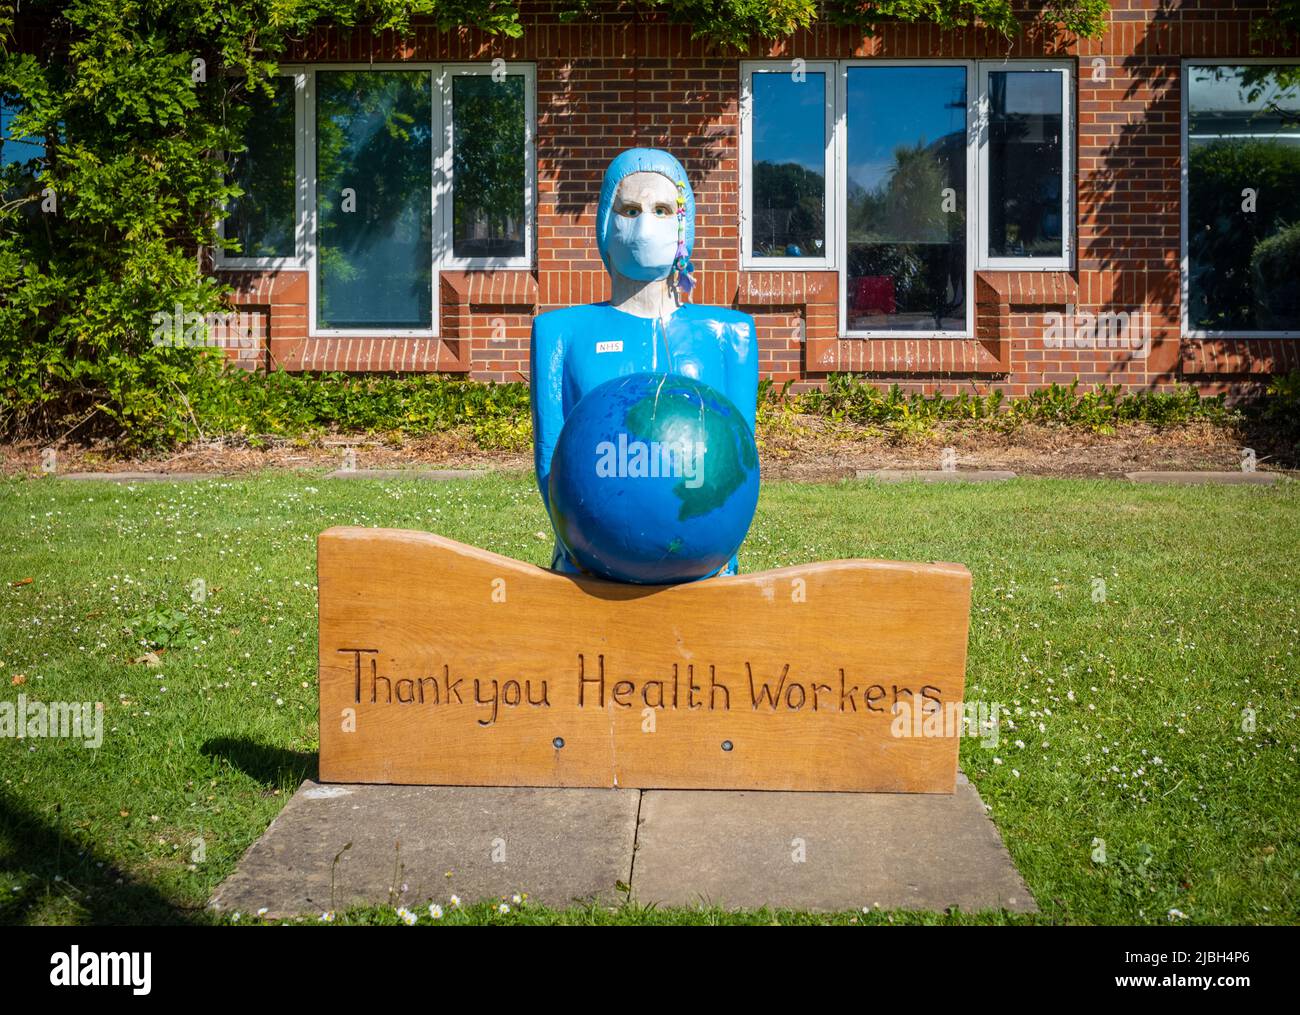 Eine Gedenkstätte für eine Krankenschwester, die eine Gesichtsmask trägt und einen Globus hält, um Gesundheitshelfern für ihre Arbeit während der COVID-19-Pandemie zu danken. Stockfoto